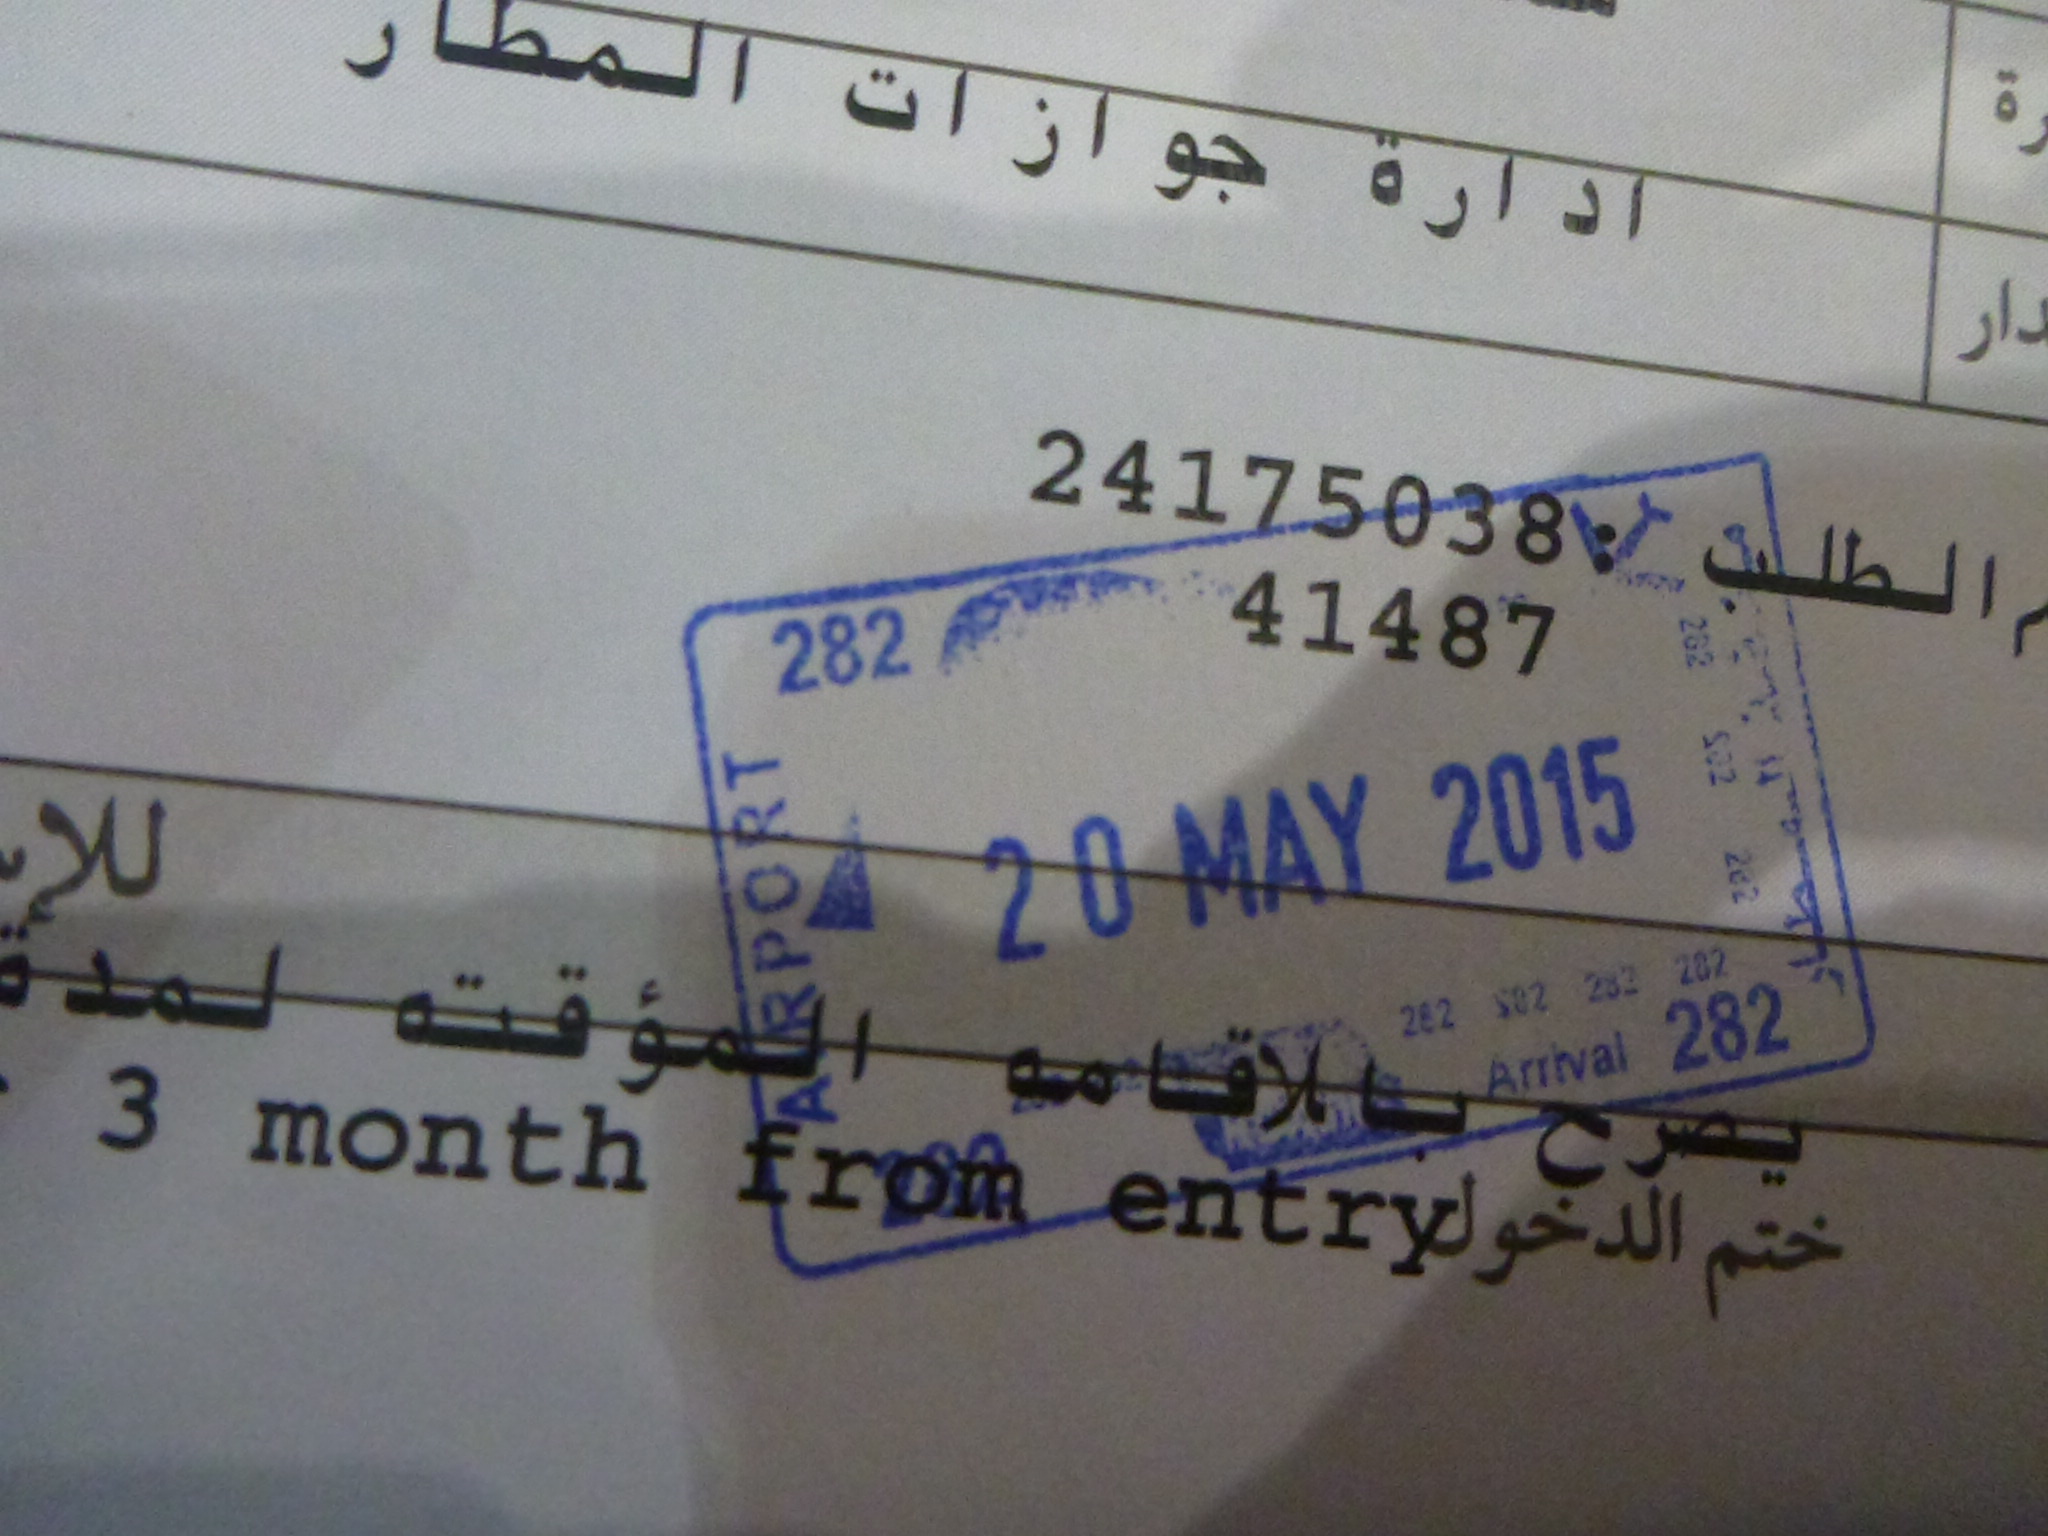 kuwait visit visa price in sri lanka